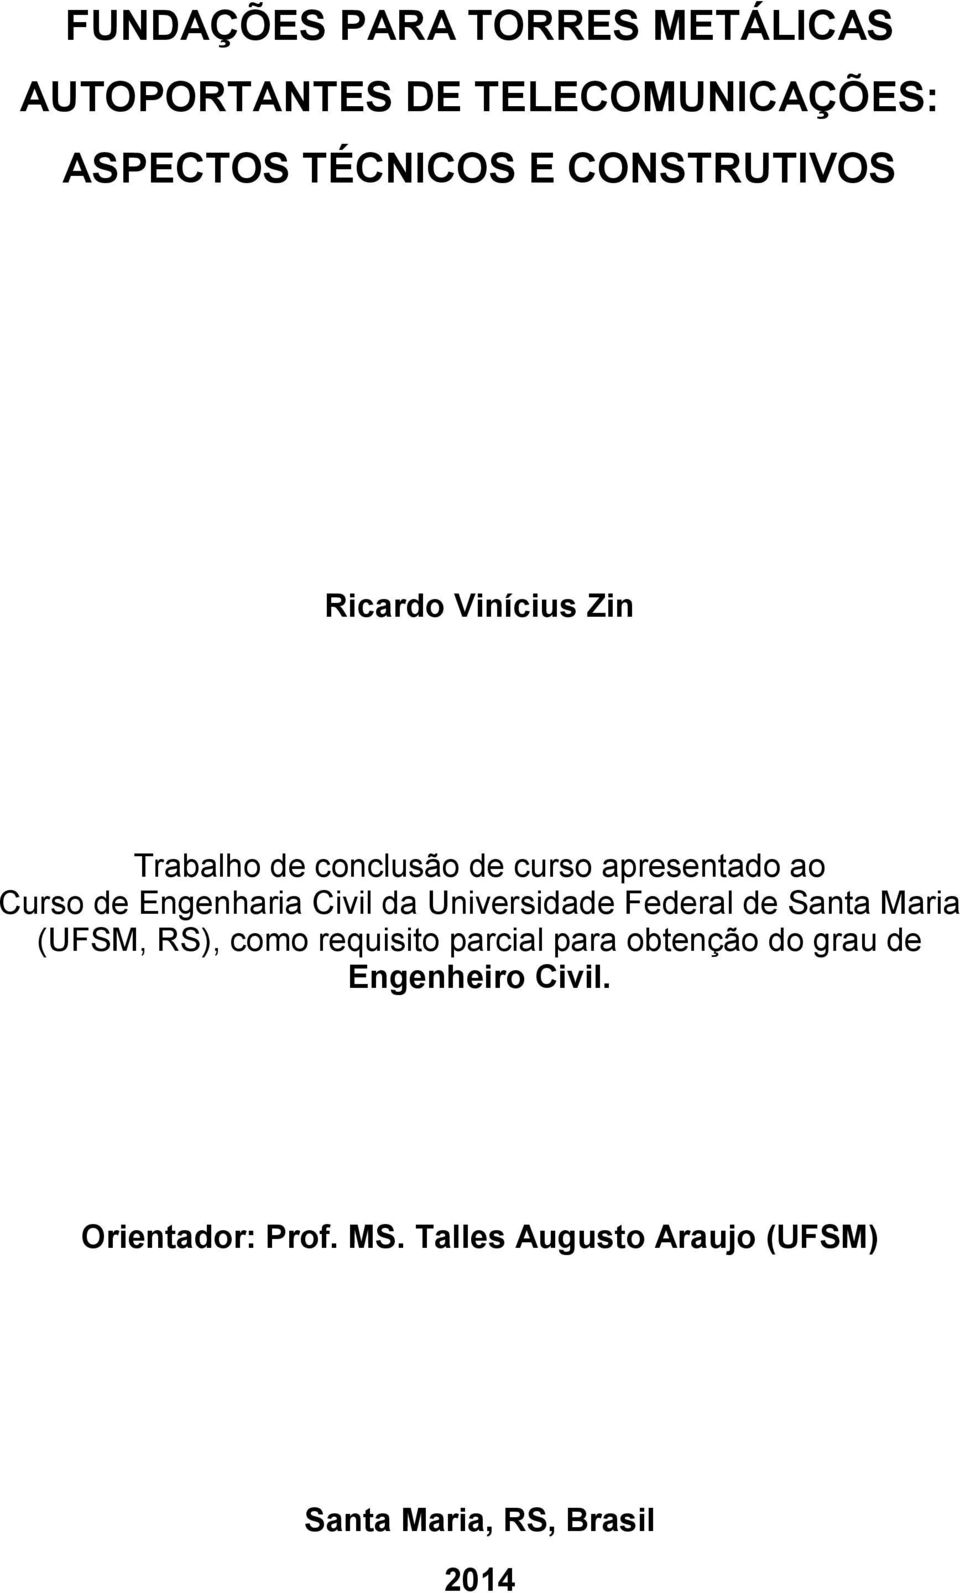 Engenharia Civil da Universidade Federal de Santa Maria (UFSM, RS), como requisito parcial para